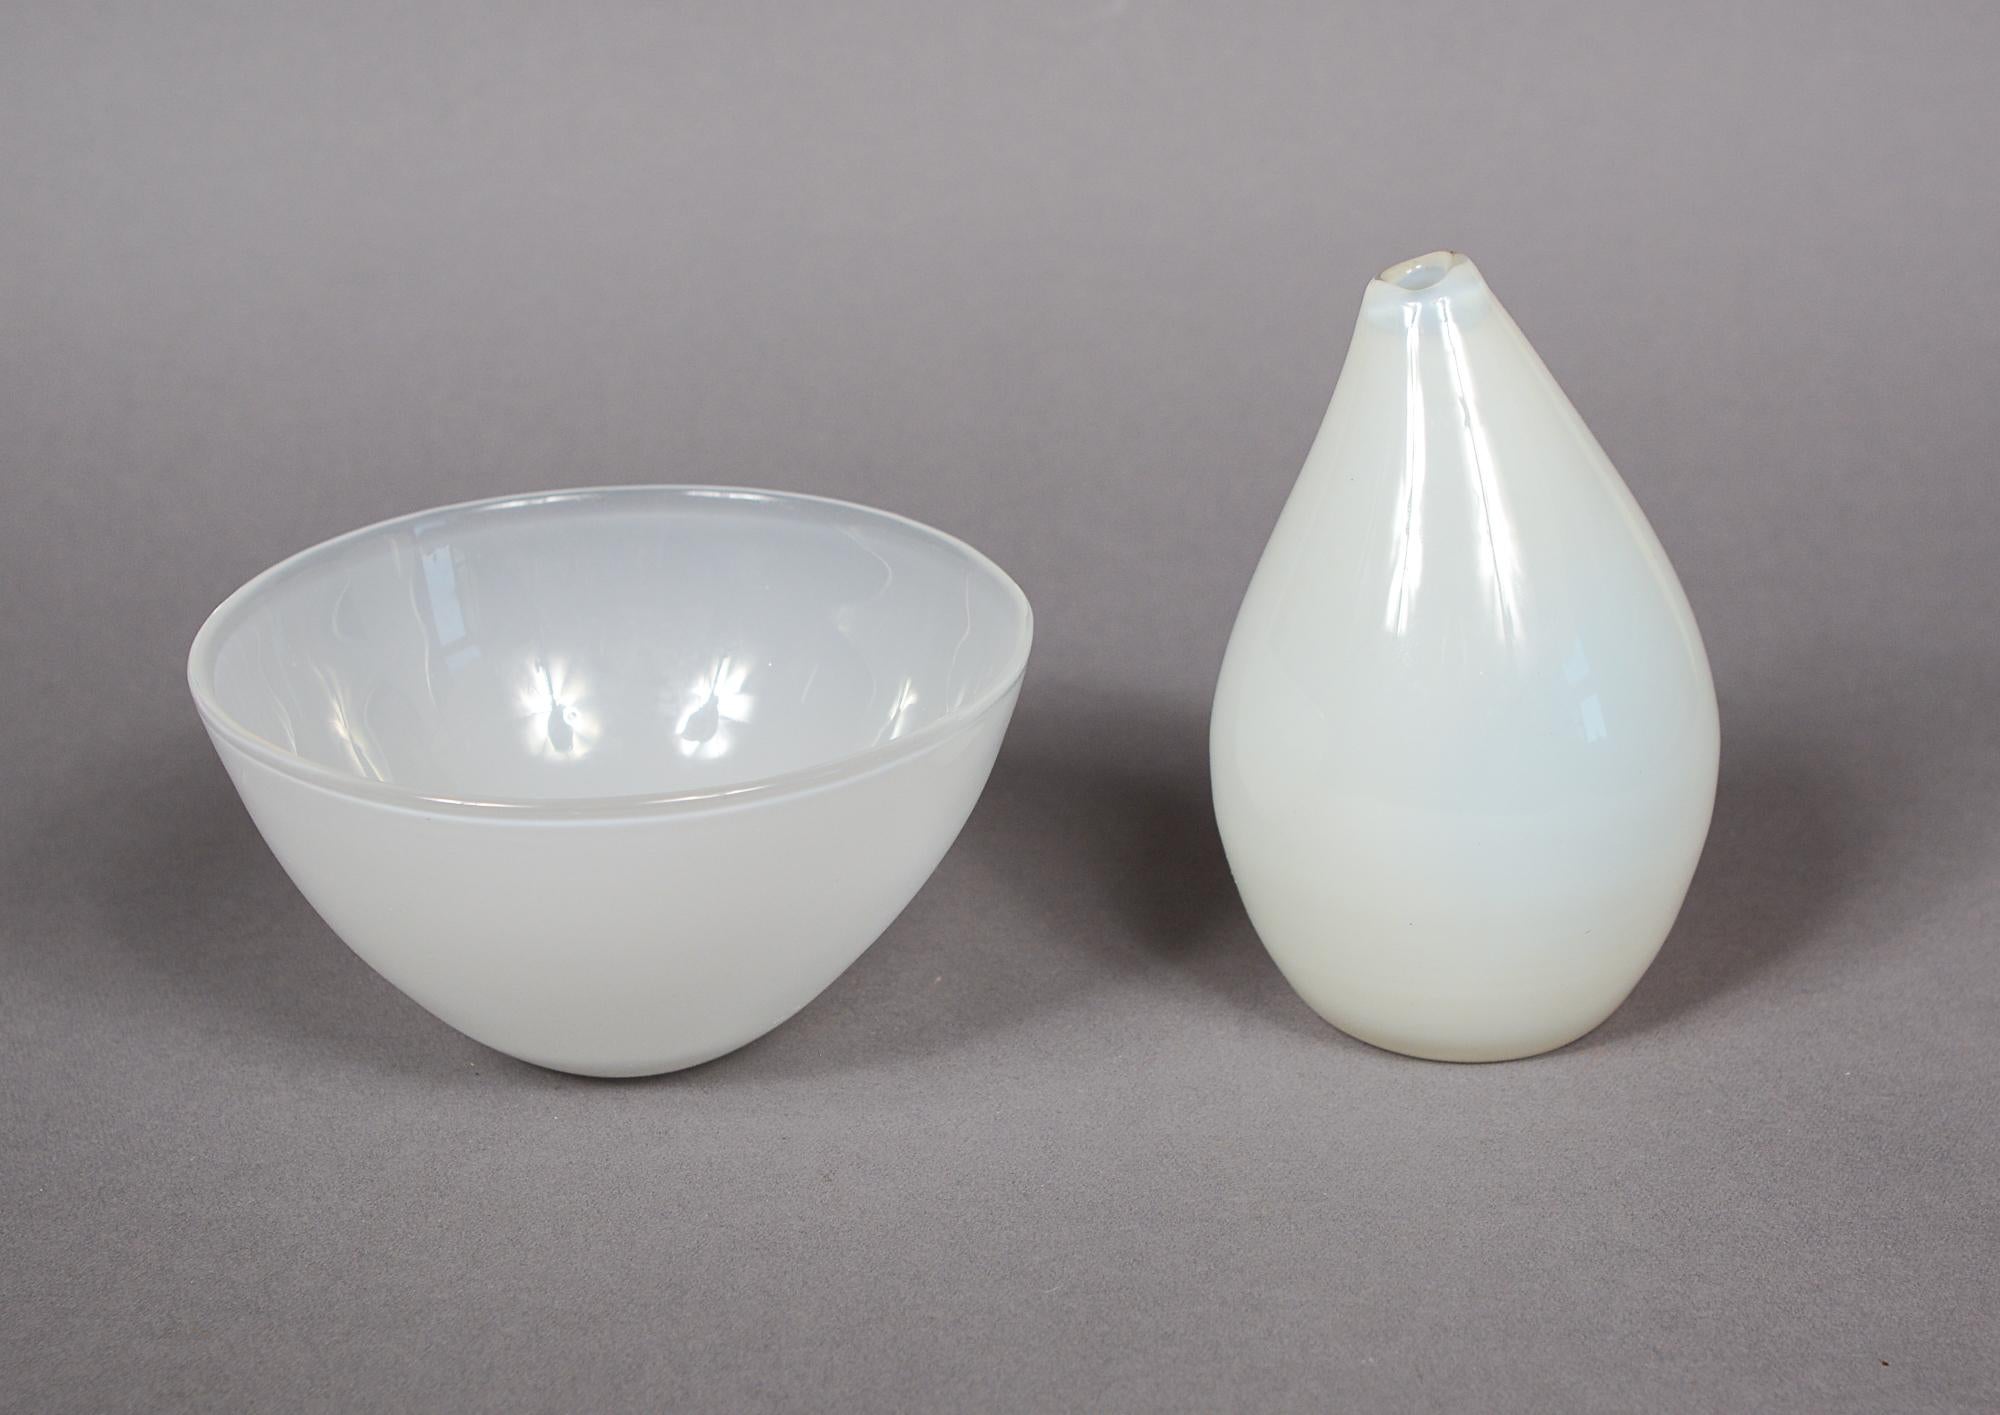 Zwei frühe Entwürfe von Tapio Wirkkala für Iittala aus Finnland. Dabei handelt es sich um eine Vase mit der Modellnummer 3287 und eine Schale mit der Modellnummer 5023. Sie erschienen erstmals 1948 im Iittala-Katalog. Sie sind beide aus